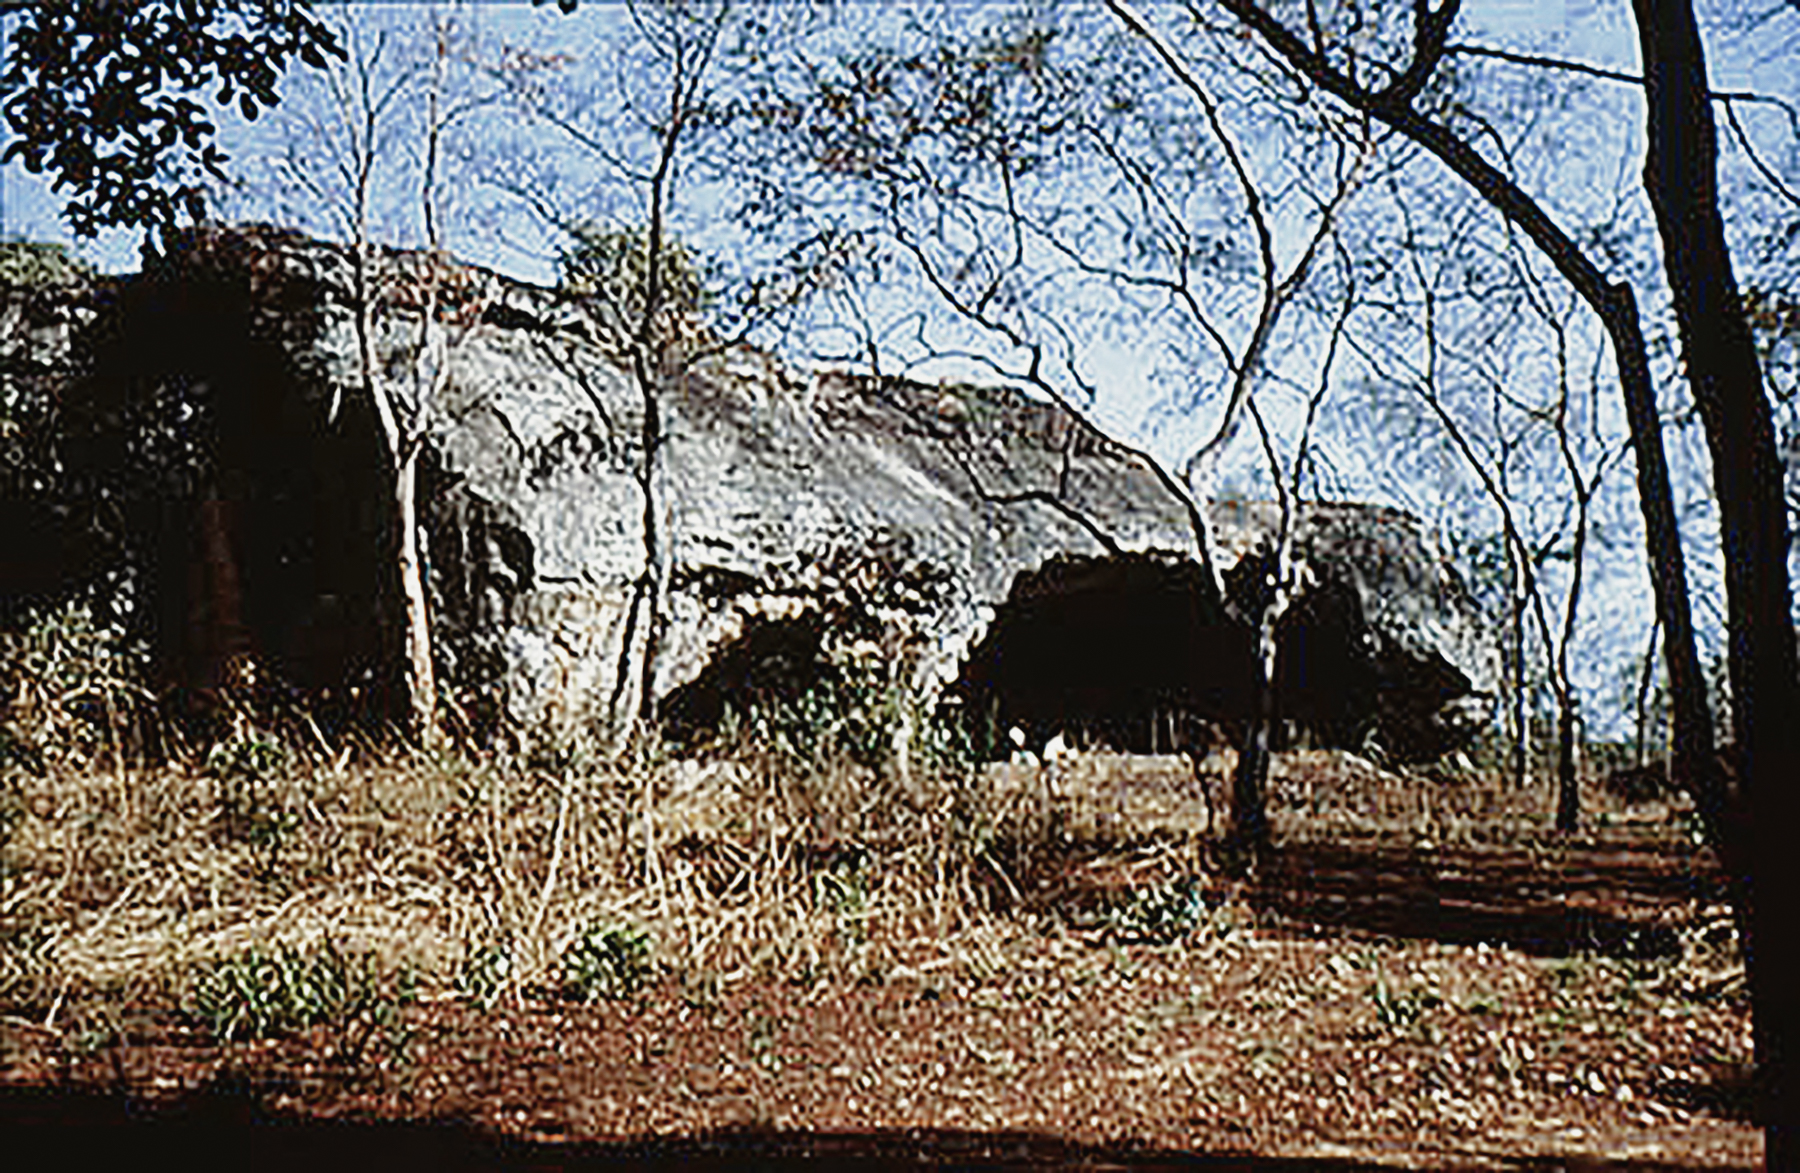 Rock Art Central Africa Archaeology Gabon